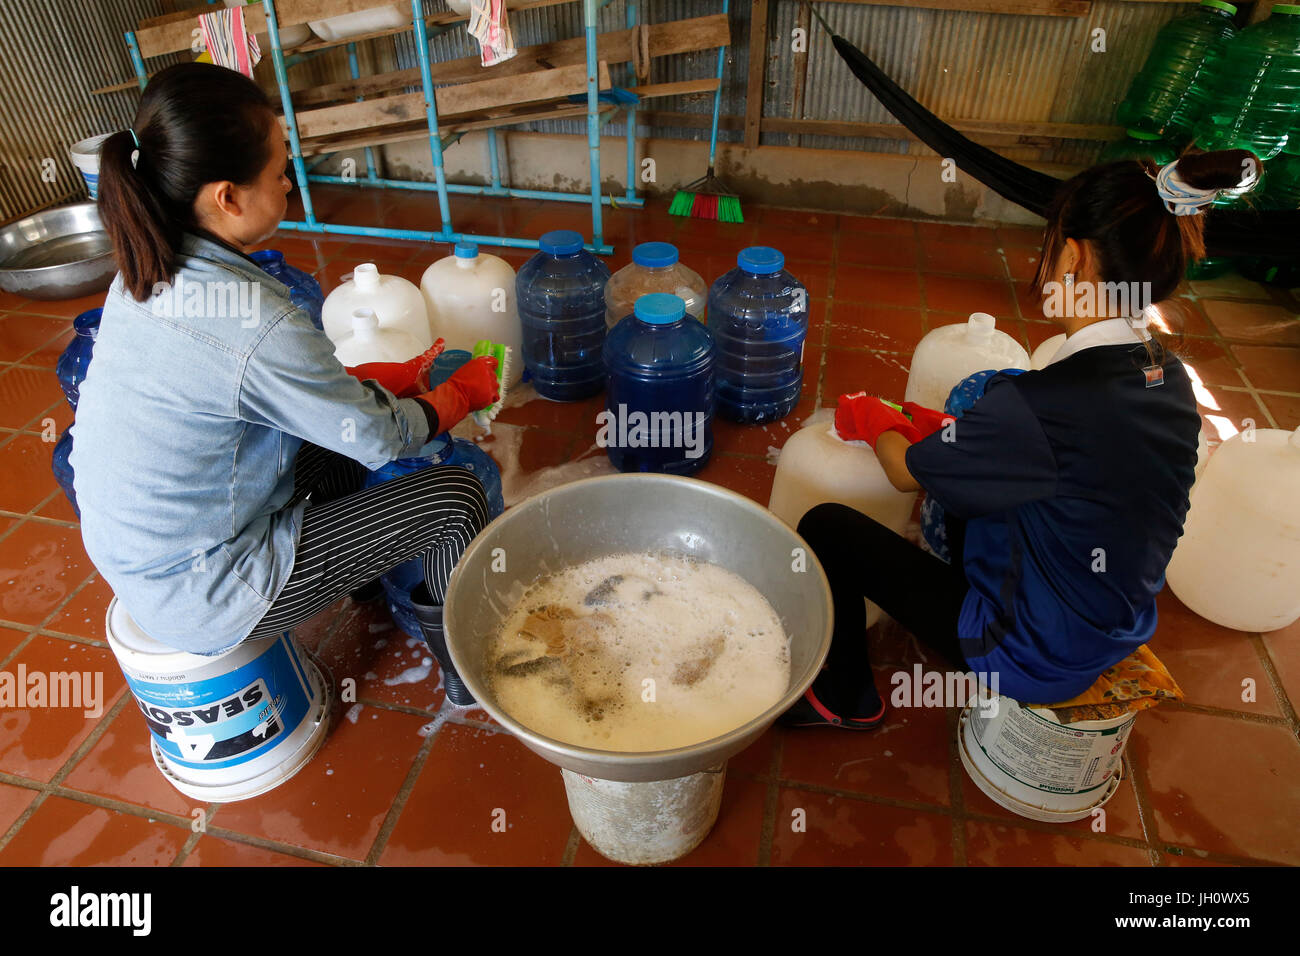 1001 Brunnen Wasser Unternehmen. Mitarbeiter Reinigung Korbflaschen. Kambodscha. Stockfoto